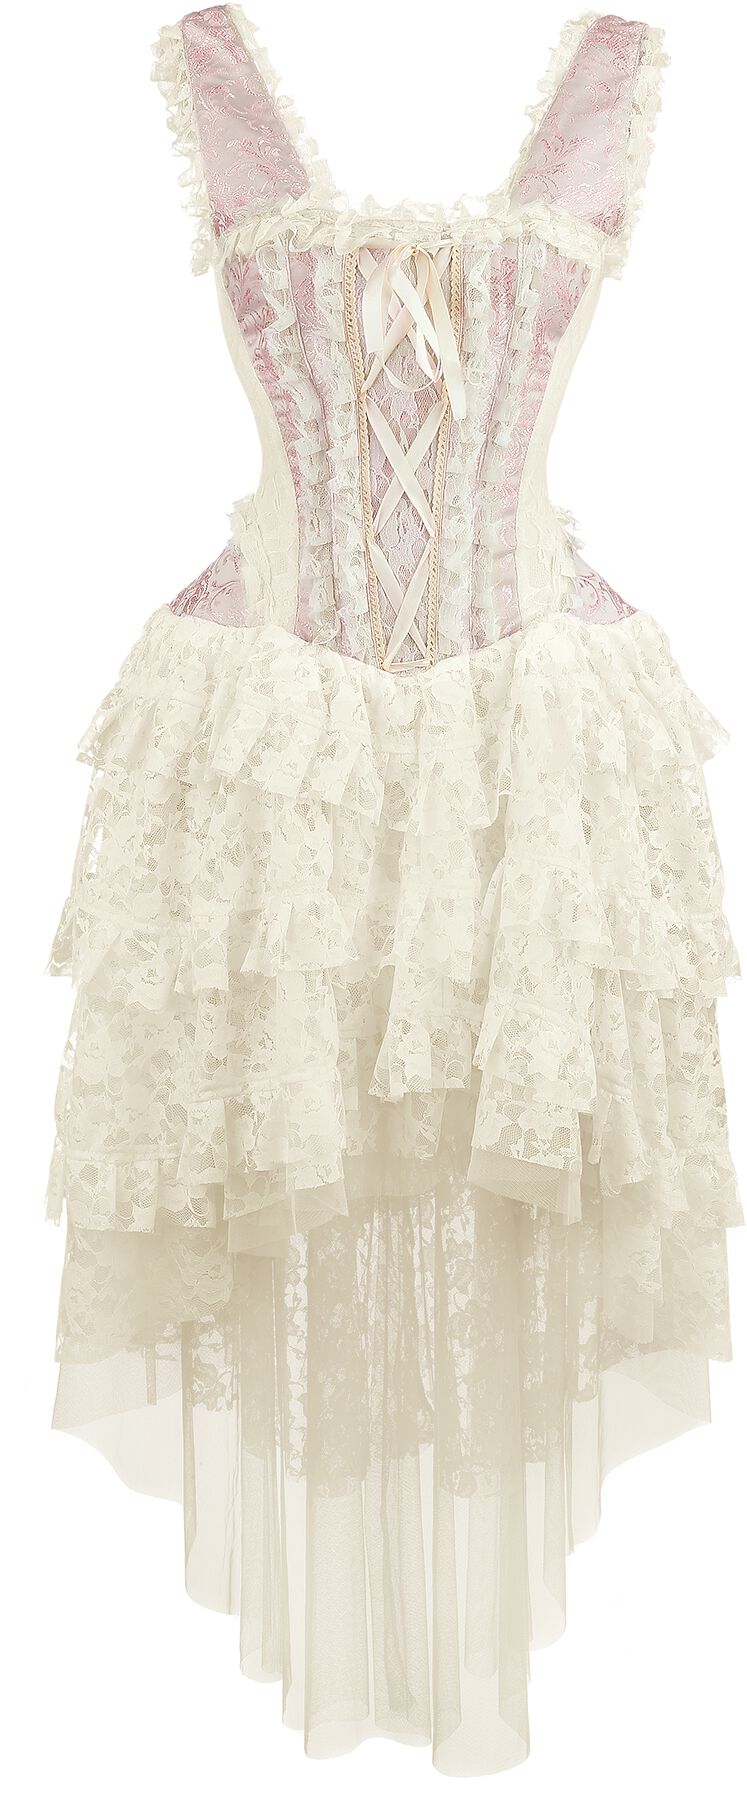 Burleska Ophelie Dress Langes Kleid rosa in S